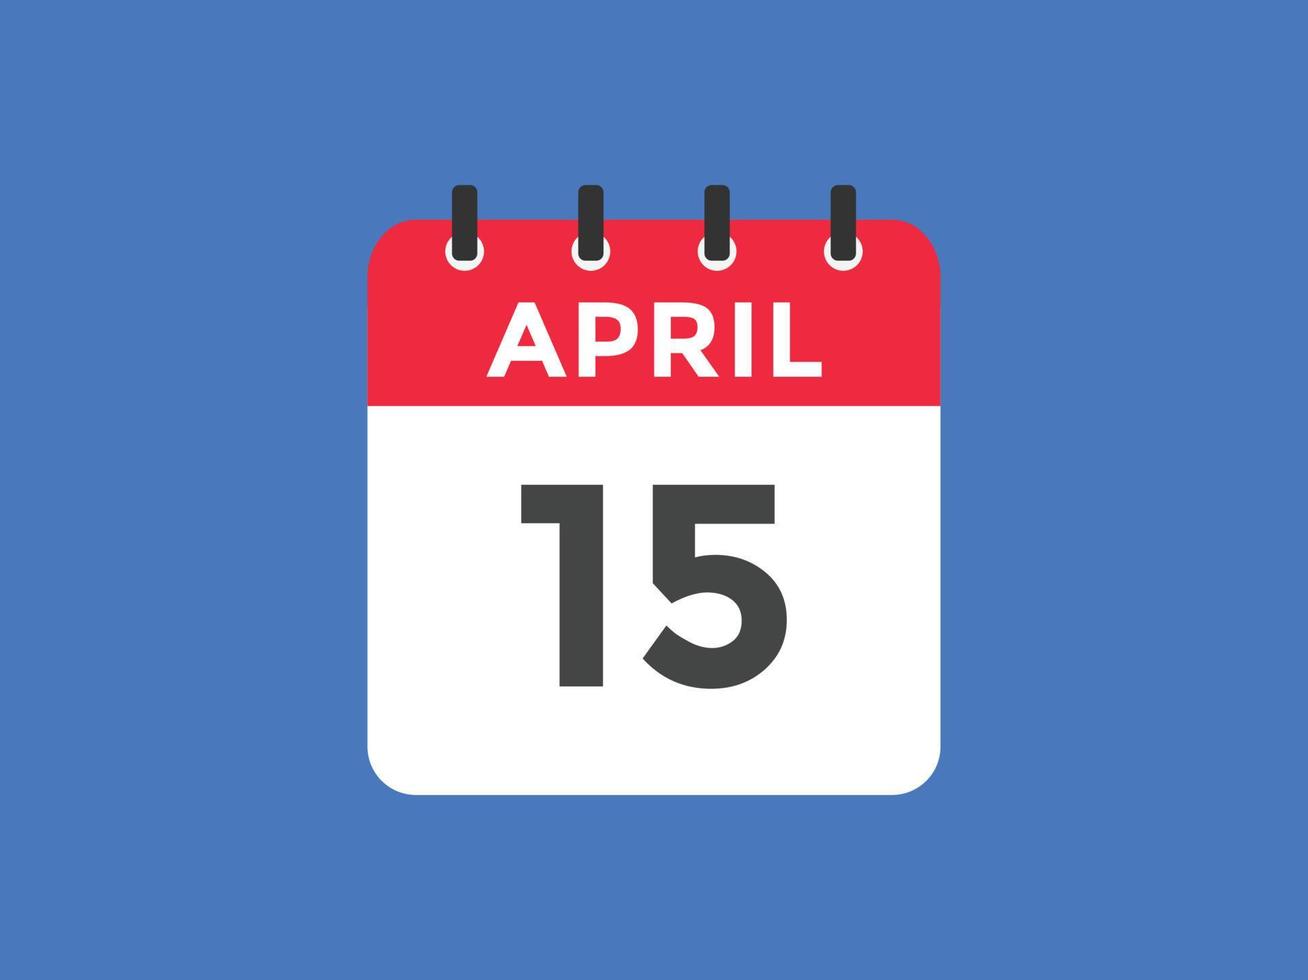 april 15 kalender herinnering. 15e april dagelijks kalender icoon sjabloon. kalender 15e april icoon ontwerp sjabloon. vector illustratie